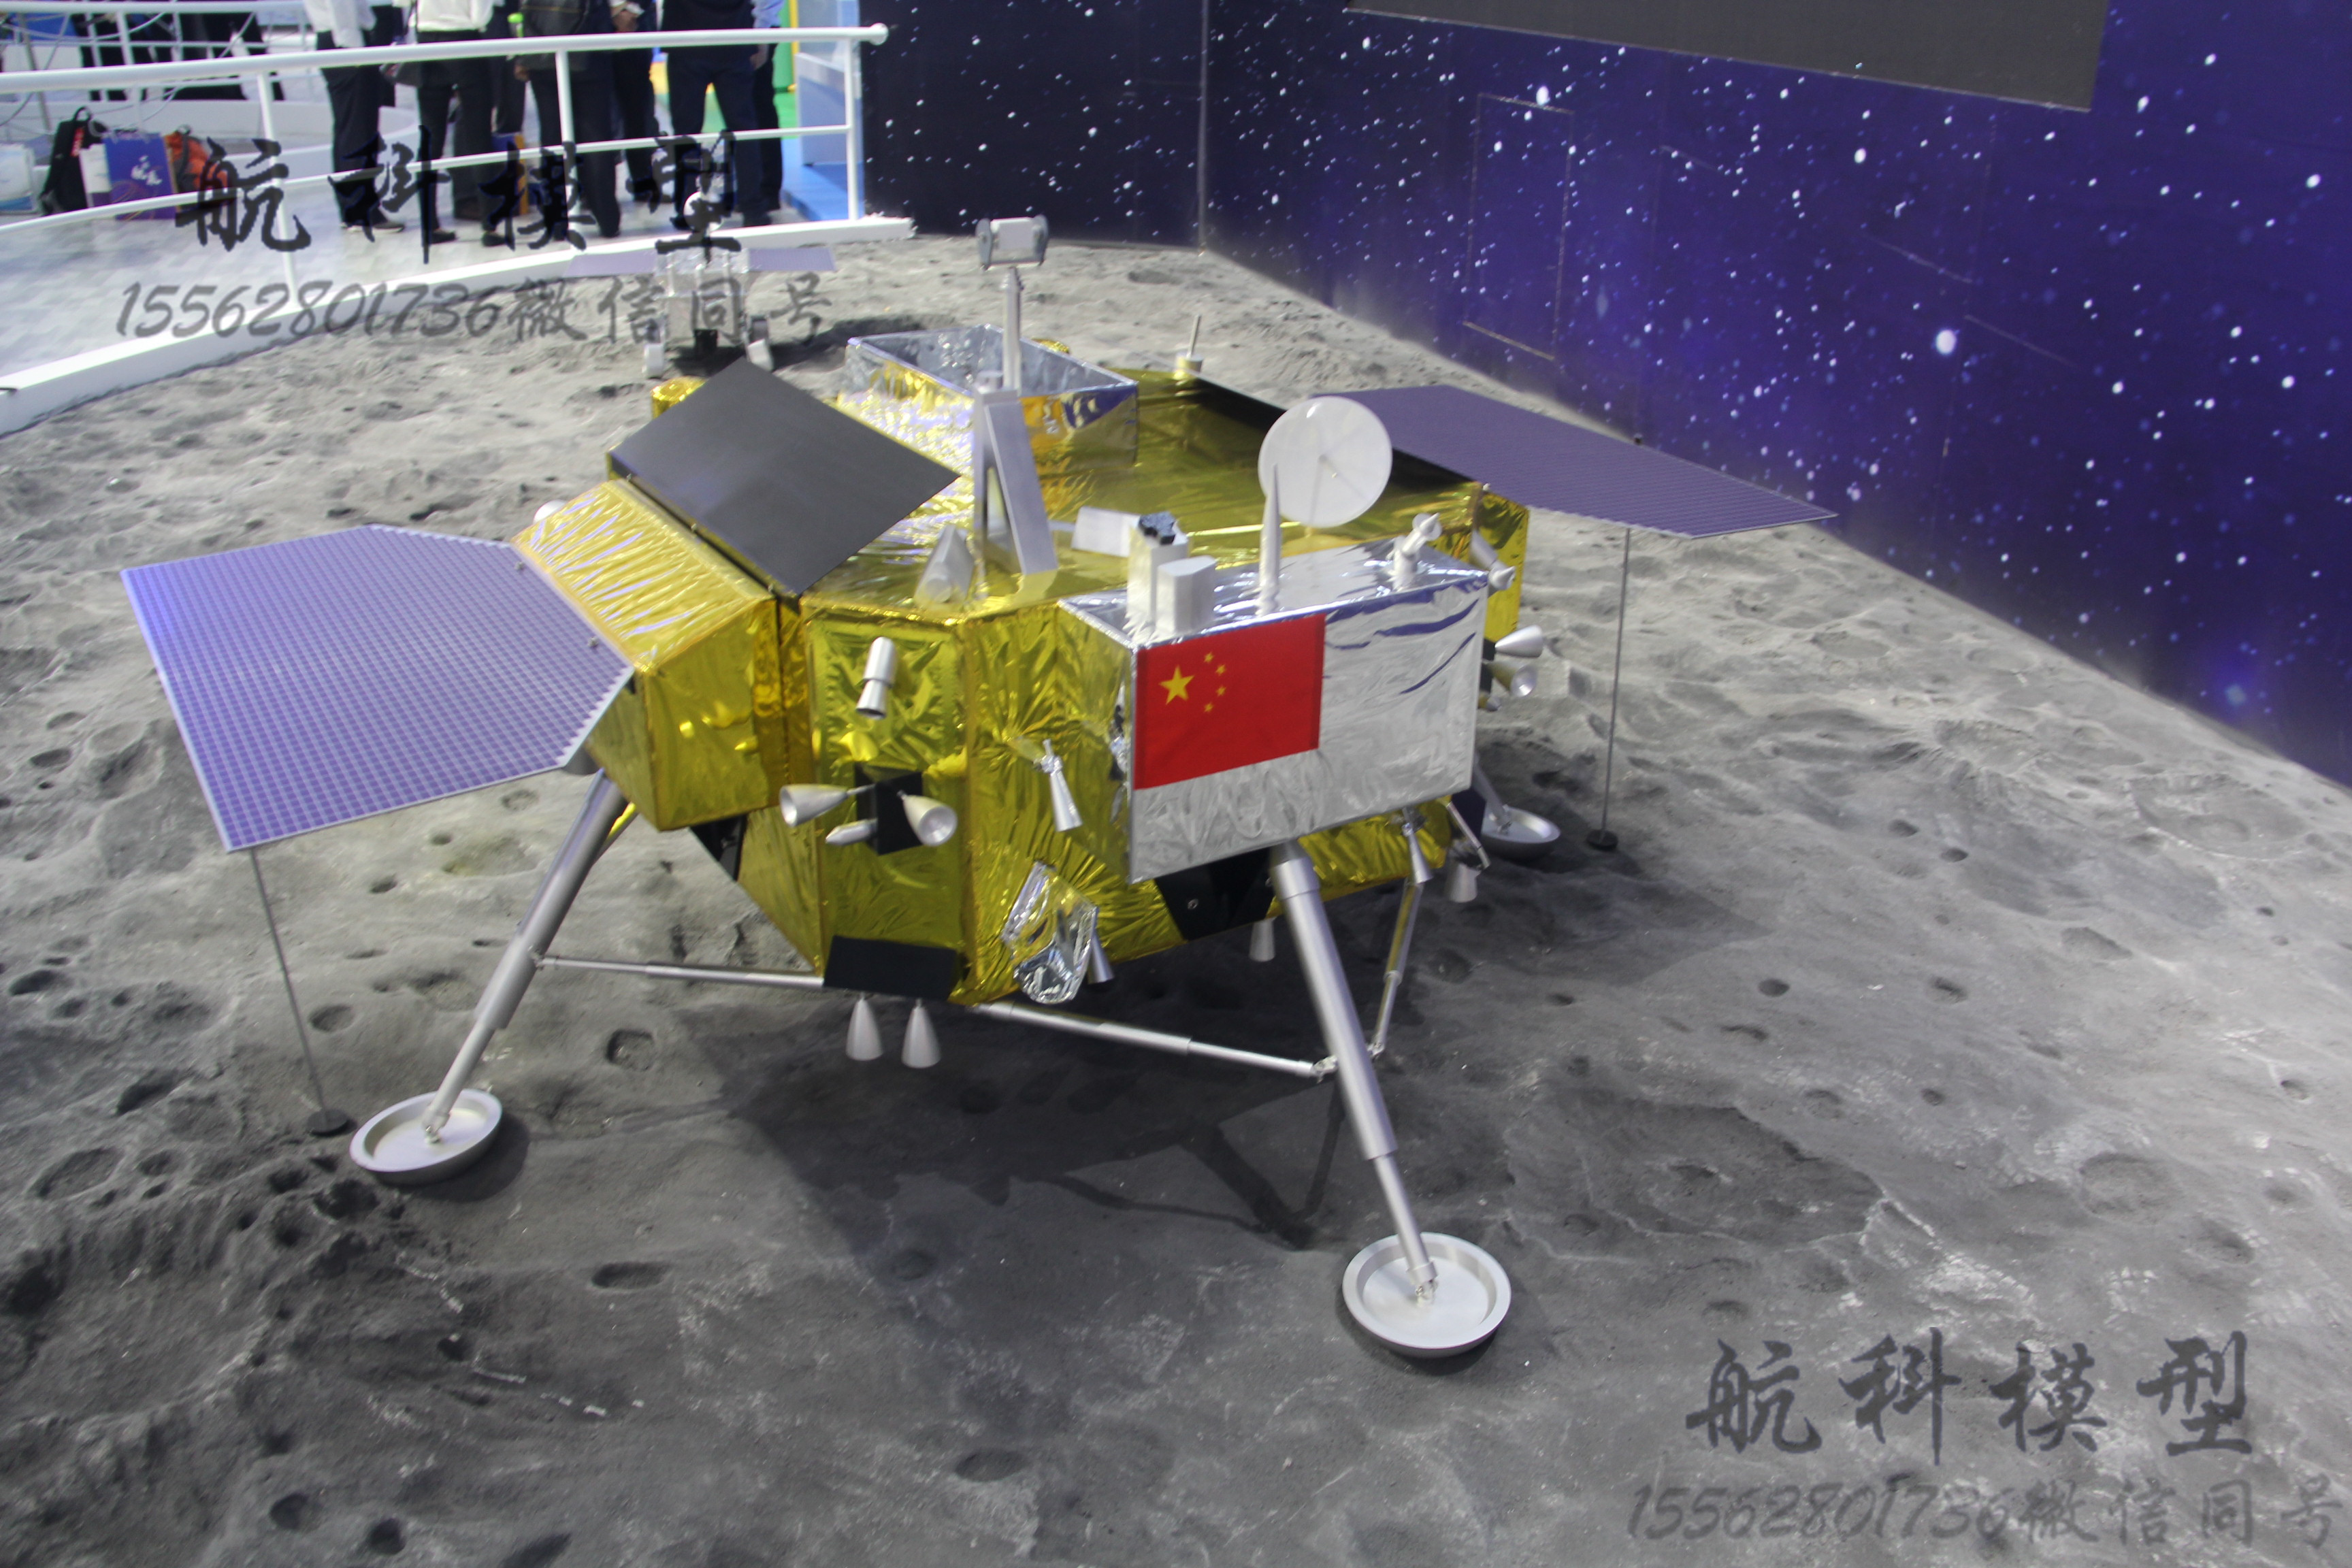 快看！嫦娥四号发回来的月表全景美照 - 世相 - 新湖南